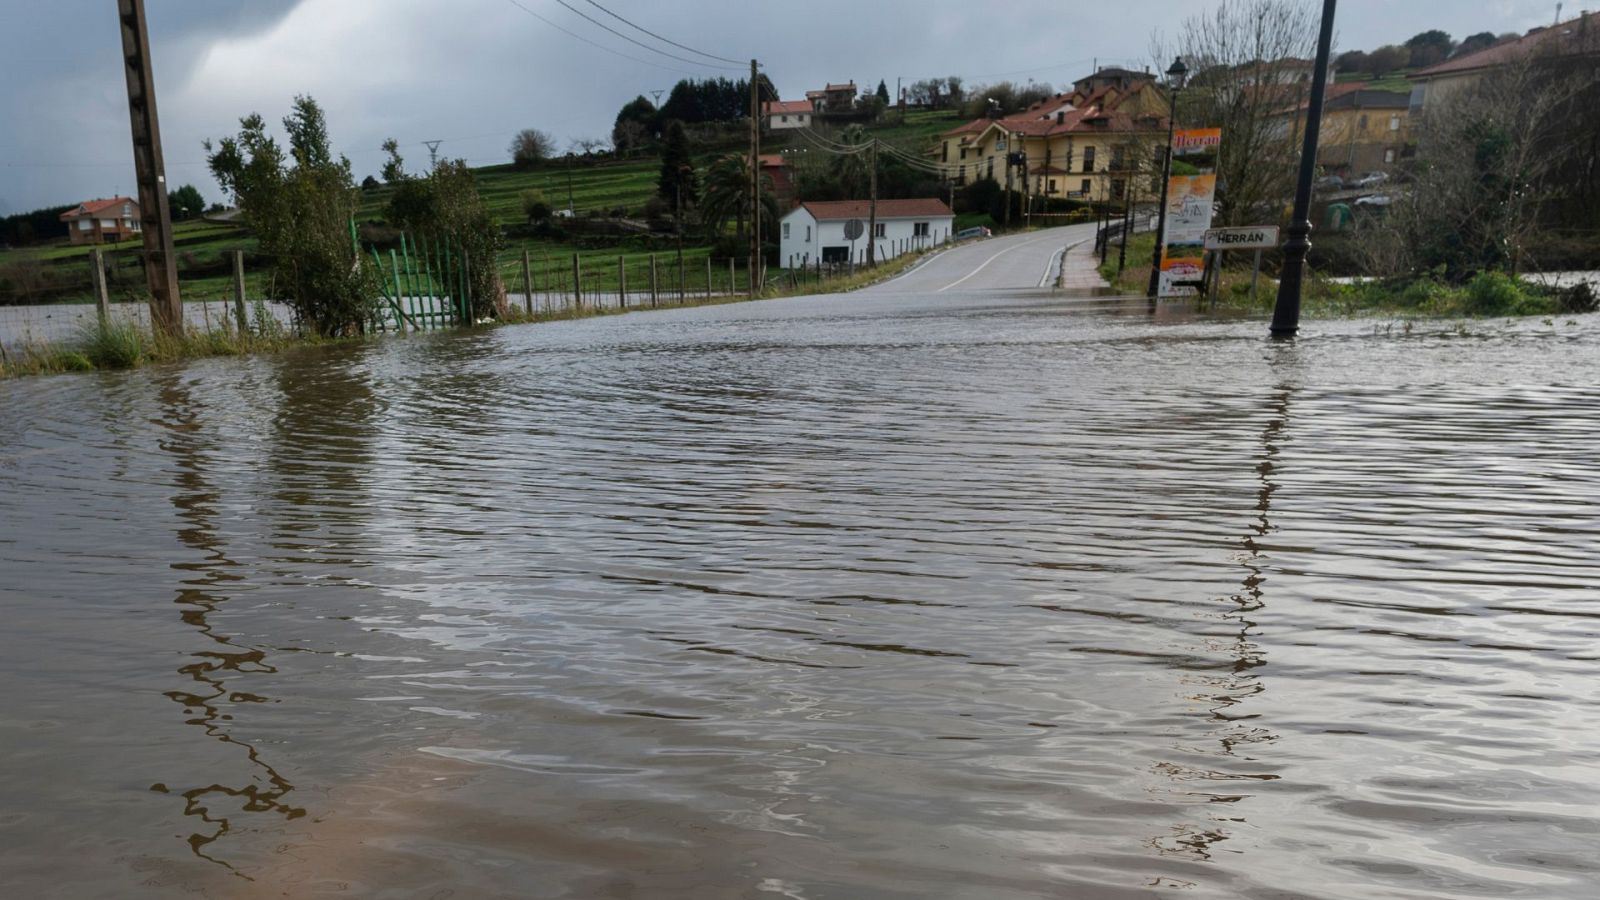 Alerta por Fien: récord de lluvia, inundaciones y puertos cerrados por el temporal en Cantabria - Ver ahora